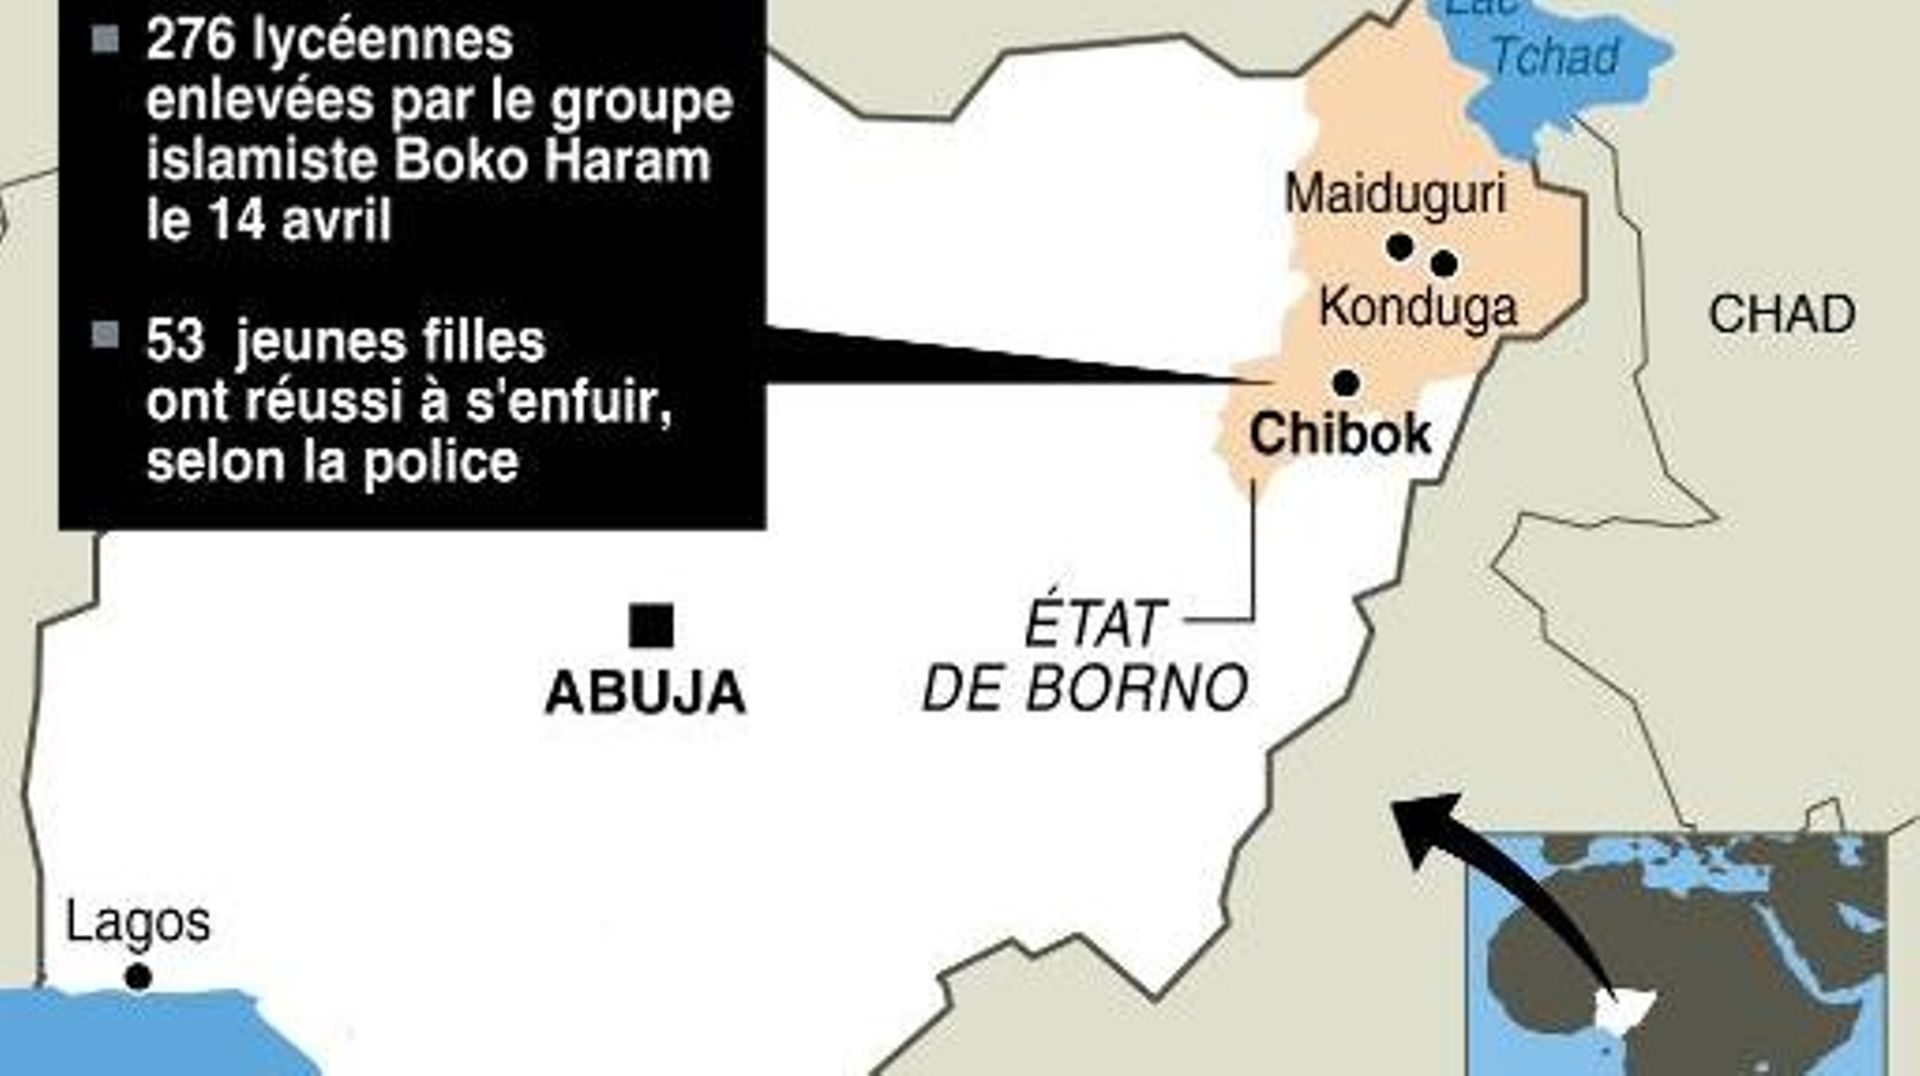 Carte de localisation de Chibok, au Nigeria, où 276 lycéennes ont été enlevées le 14 avril 2014 par les islamistes de Boko Haram